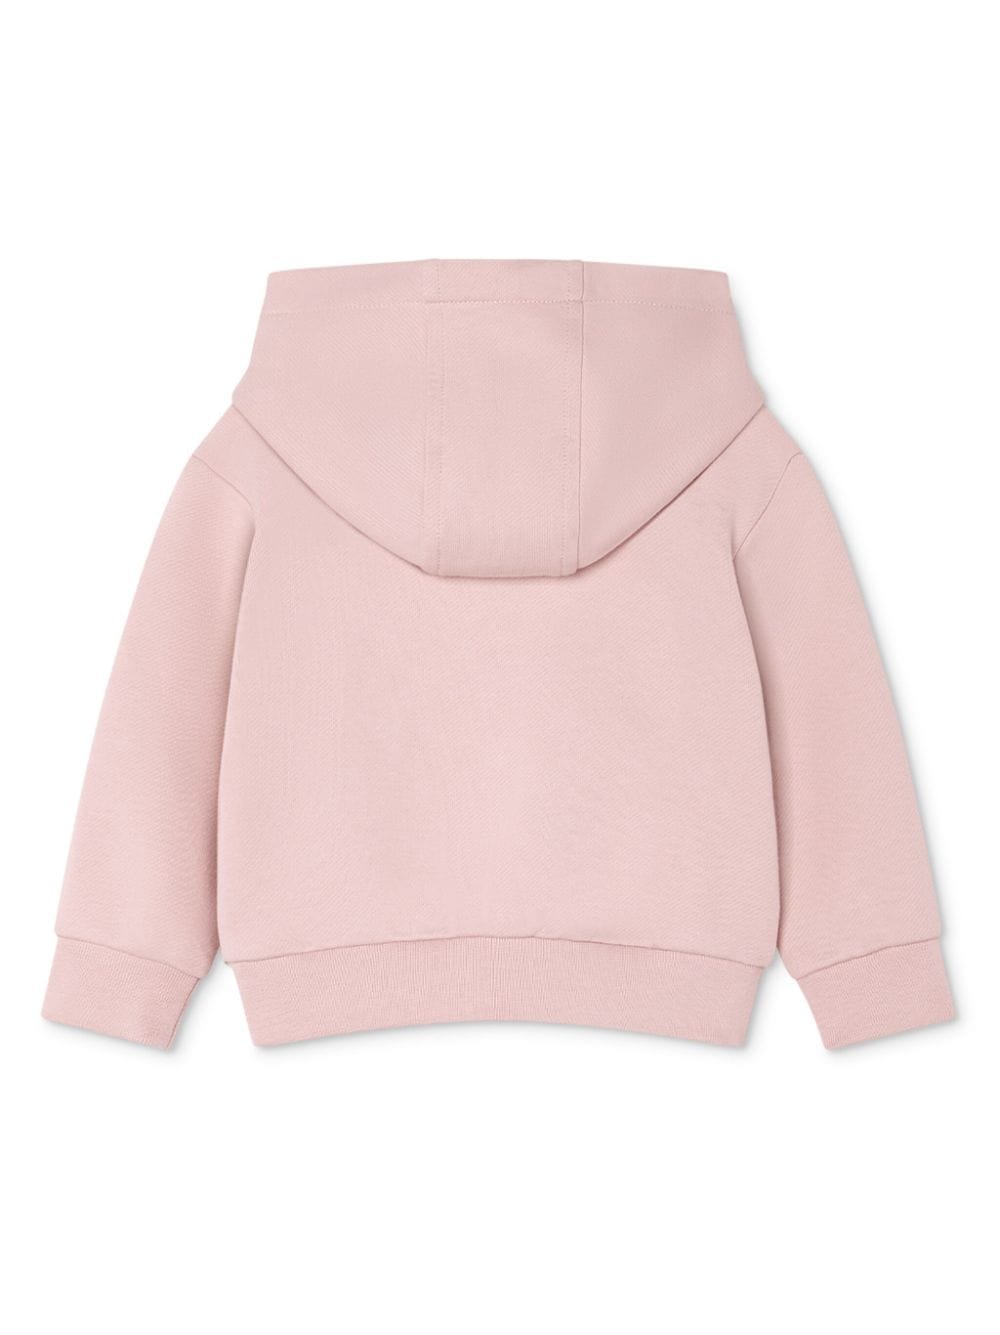 Pink cotton sweatshirt for newborns